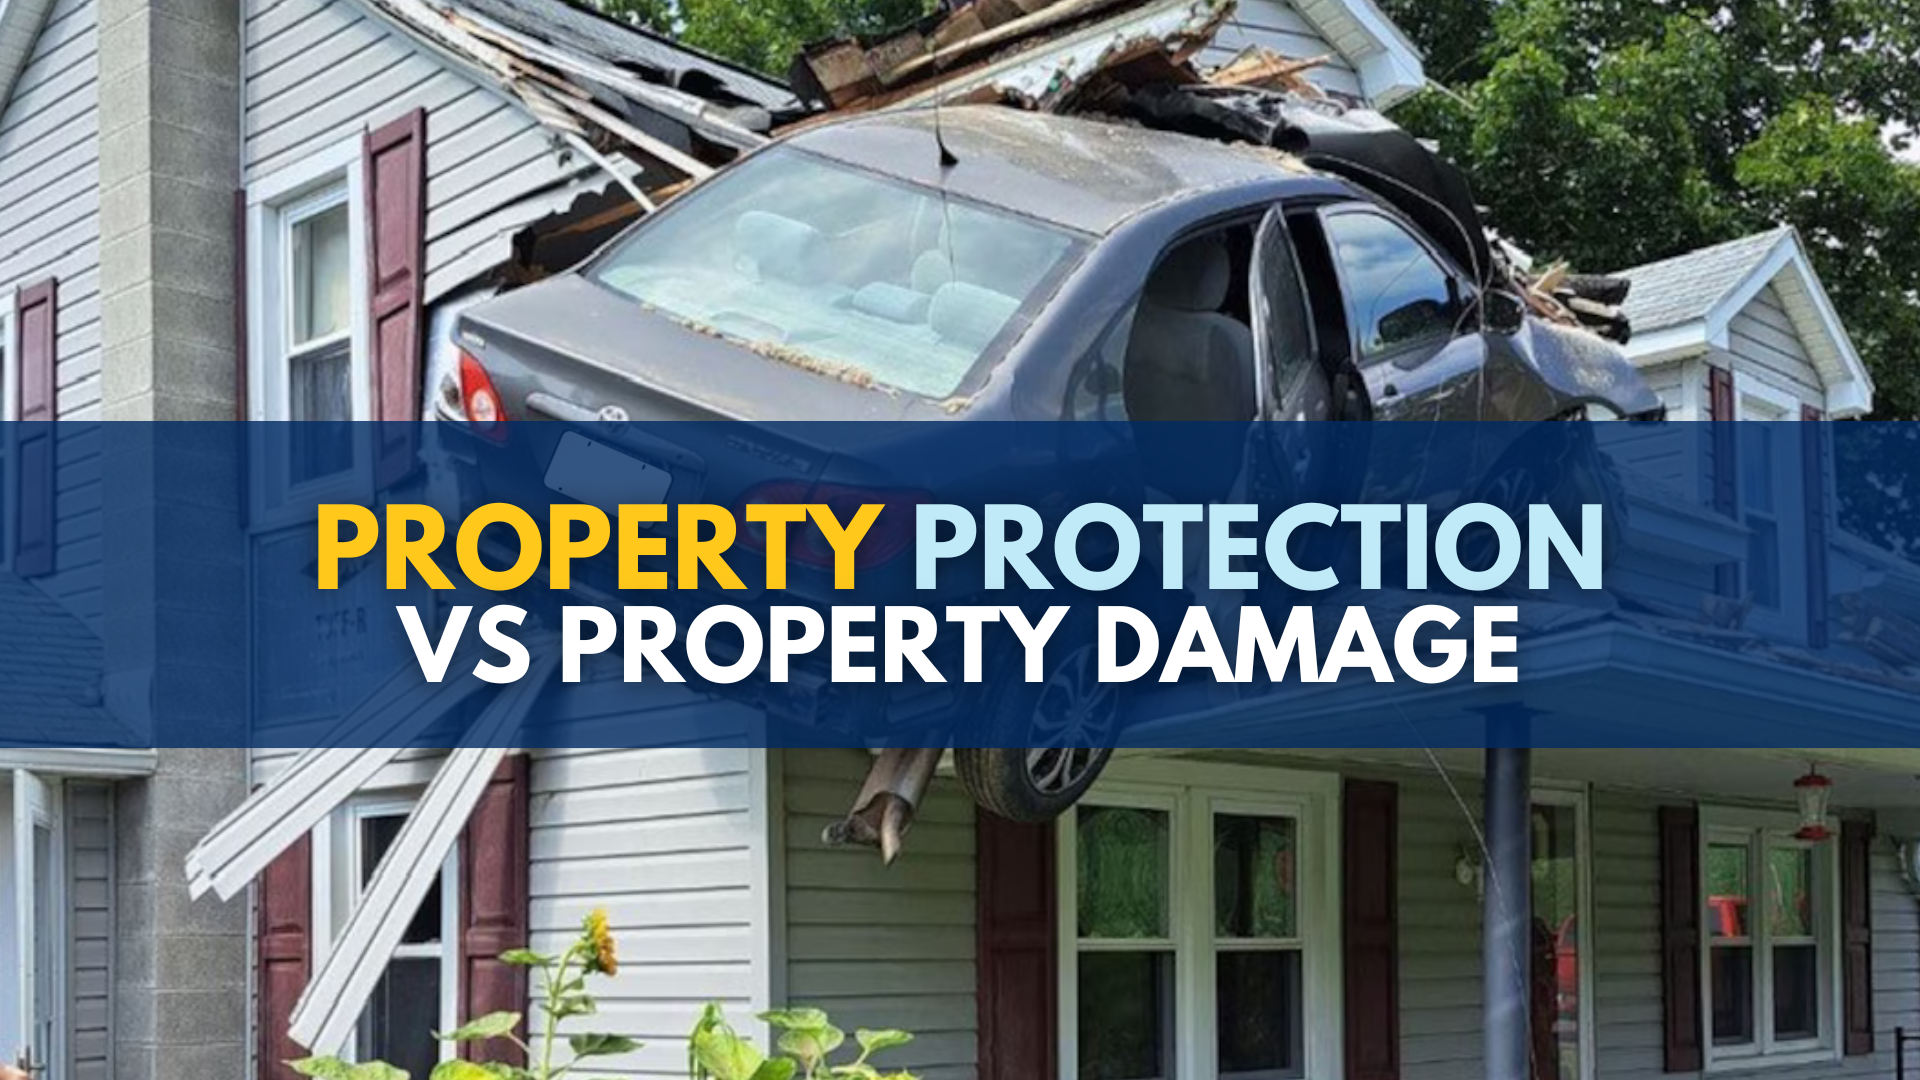 Property protection insurance vs. property damage insurance